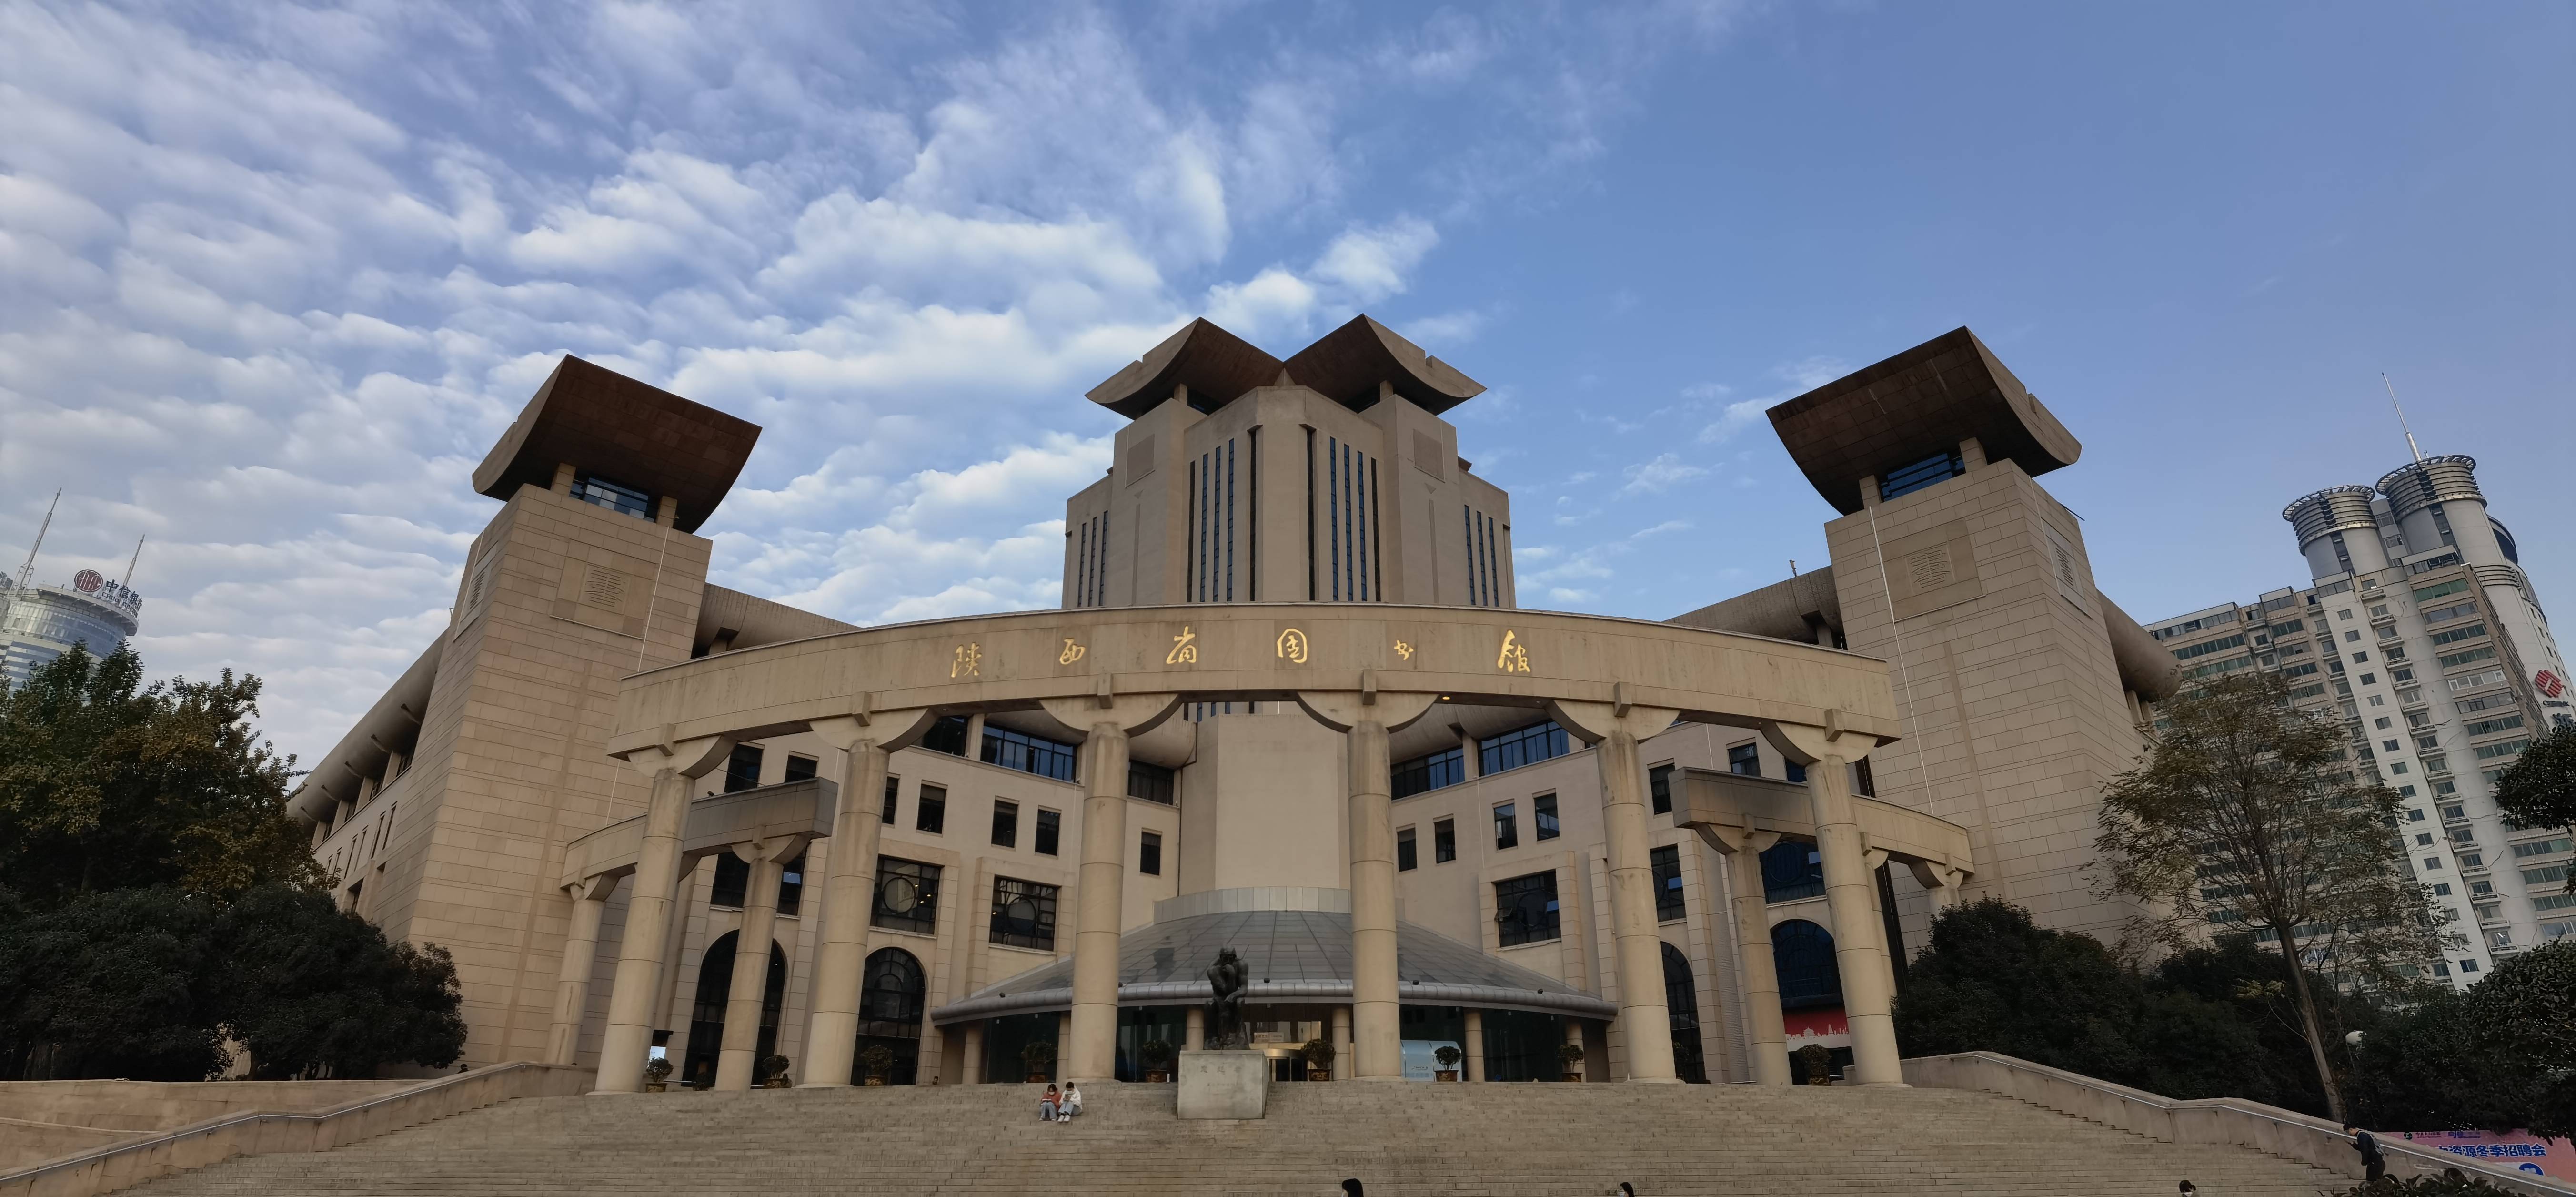 公共陕西省图书馆13日起恢复开馆须预约入馆